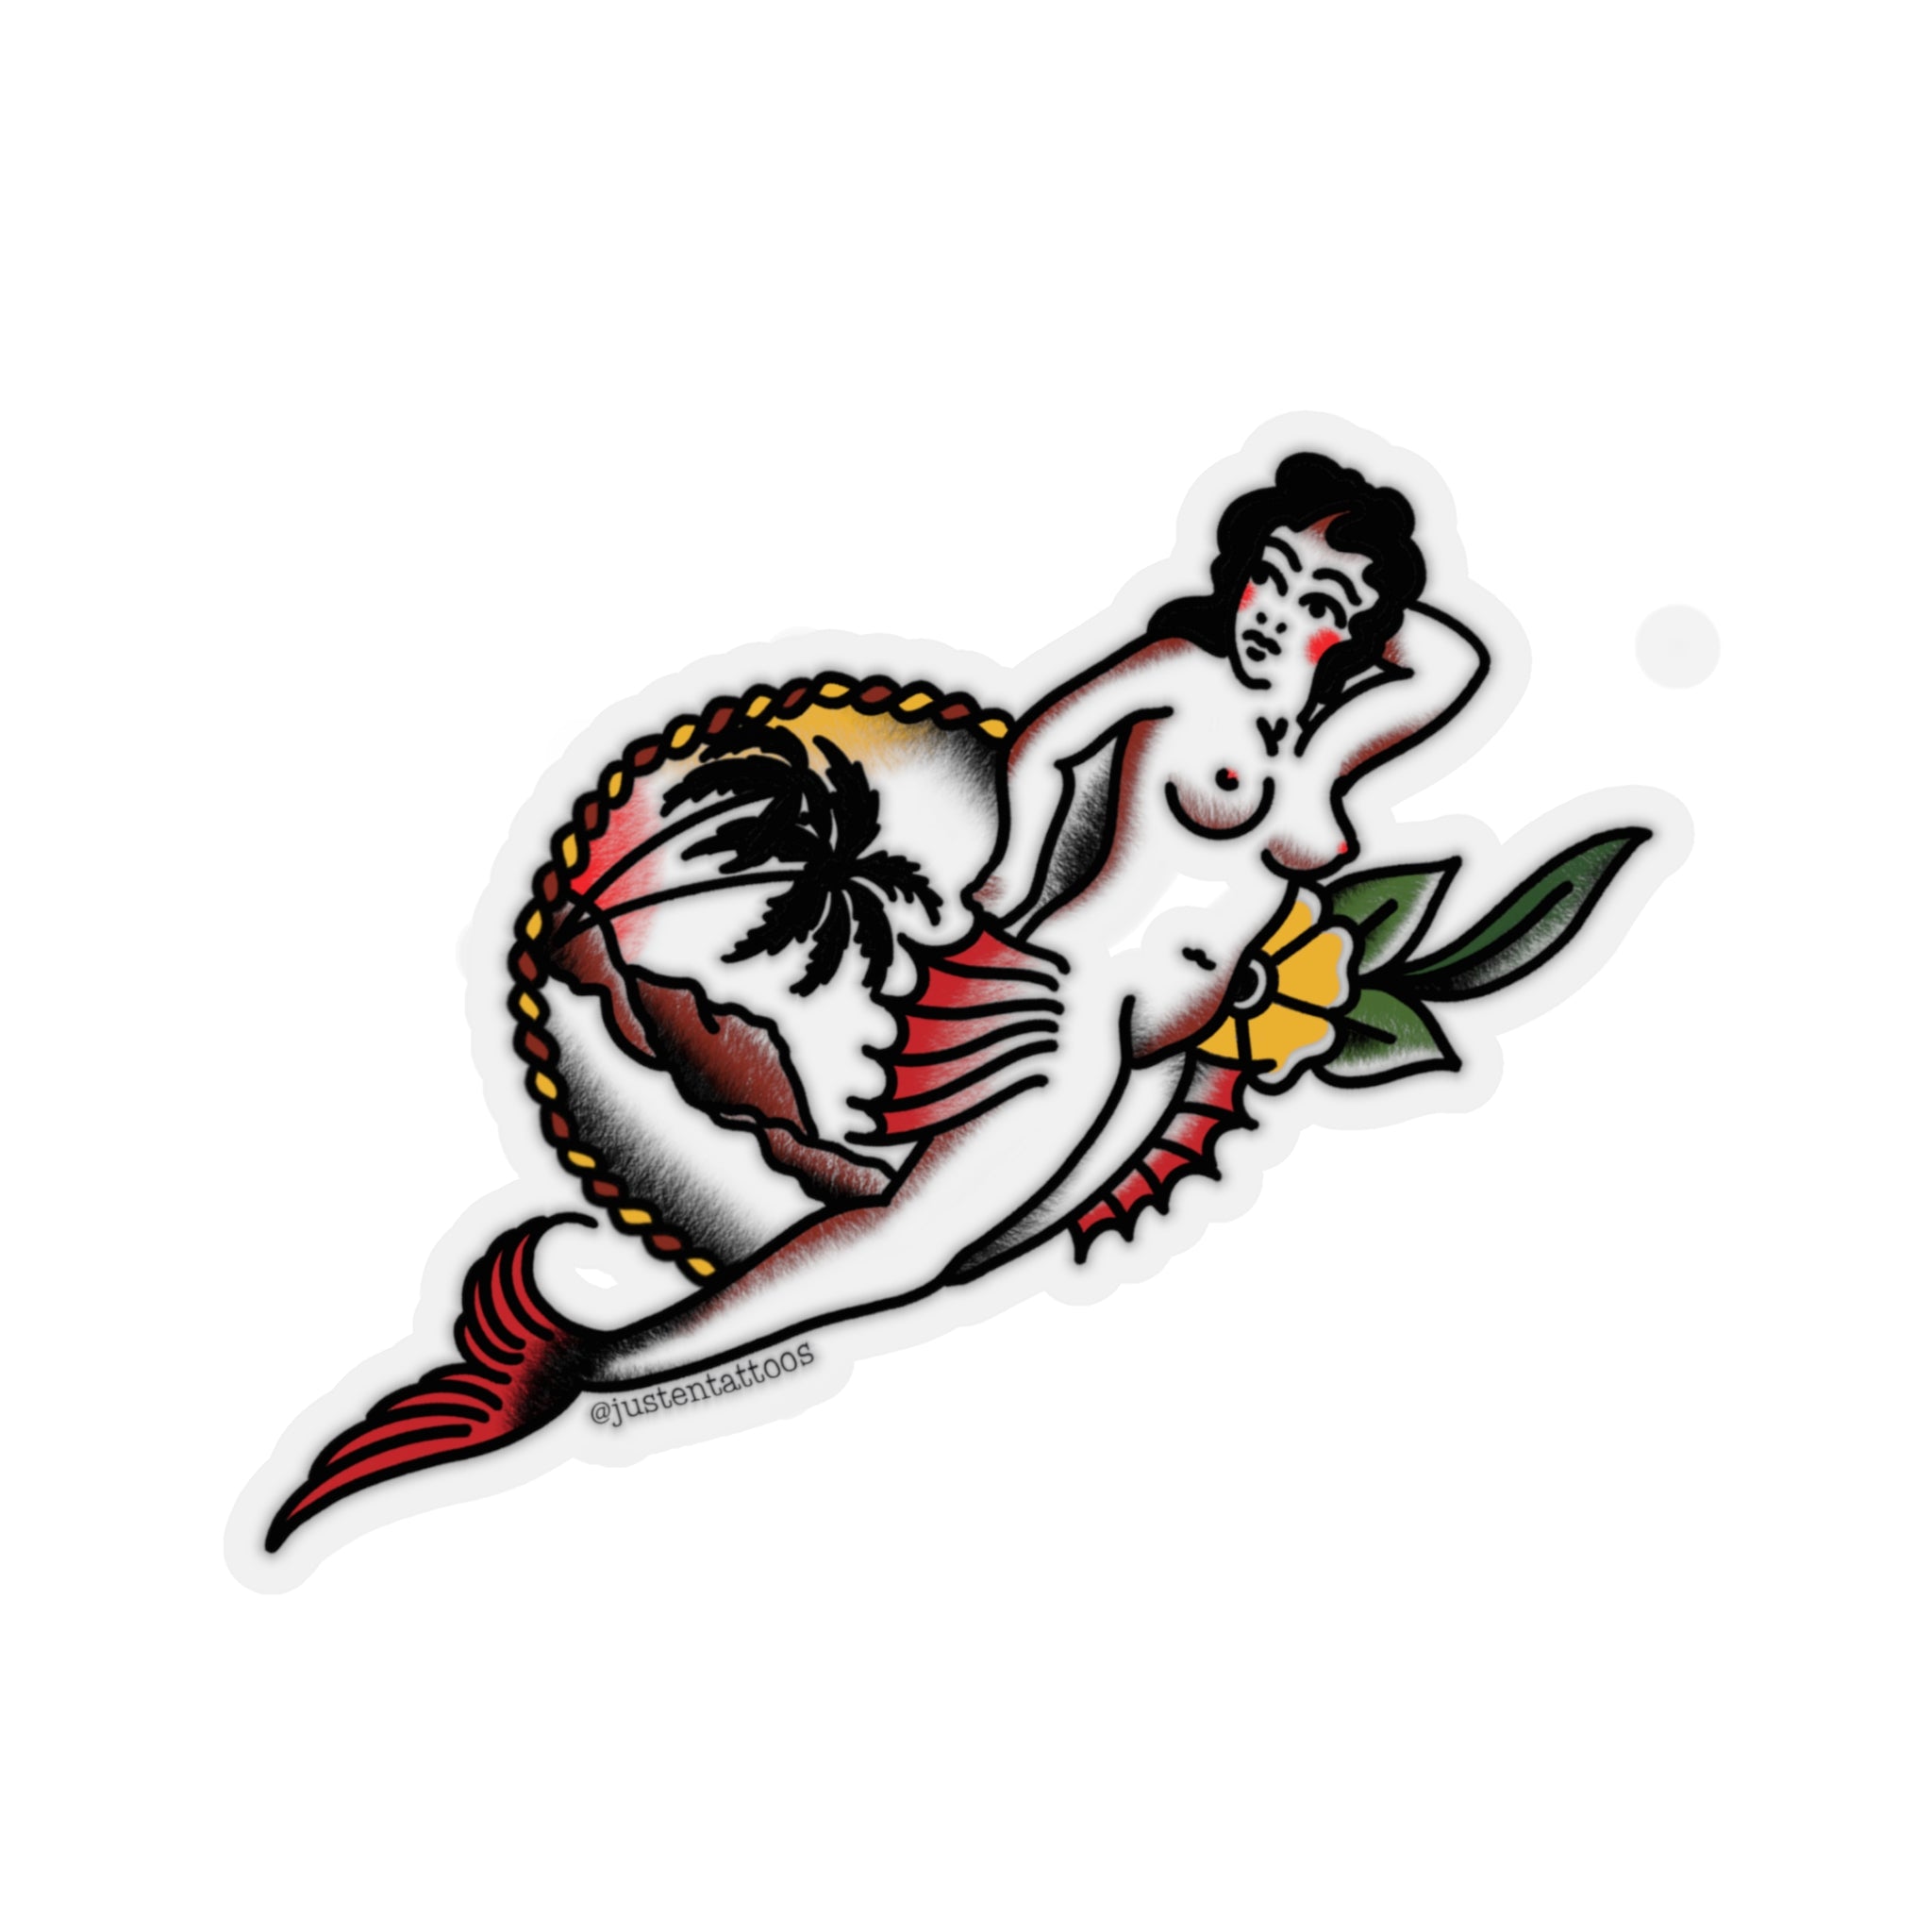 Mermaid Woman SJ Kiss-Cut Stickers